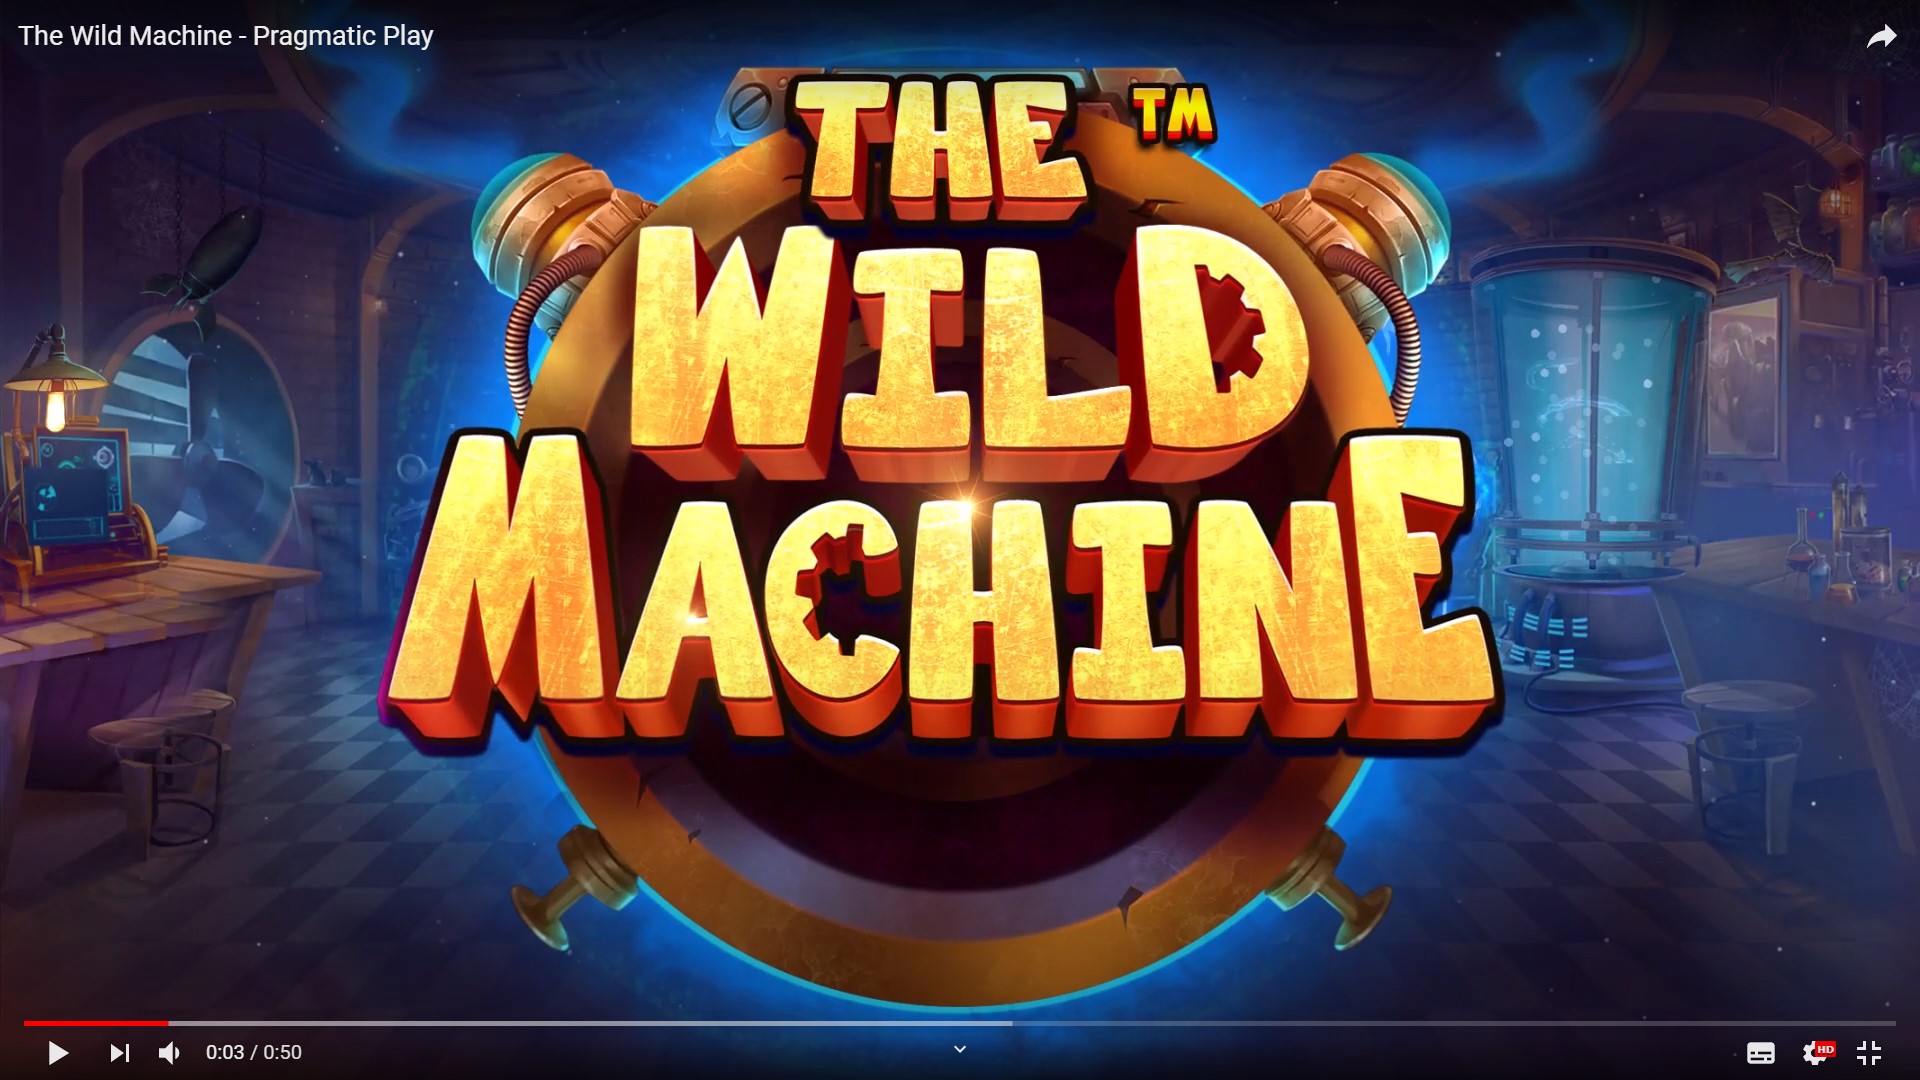 The Wild Machine link Pragmatic Play